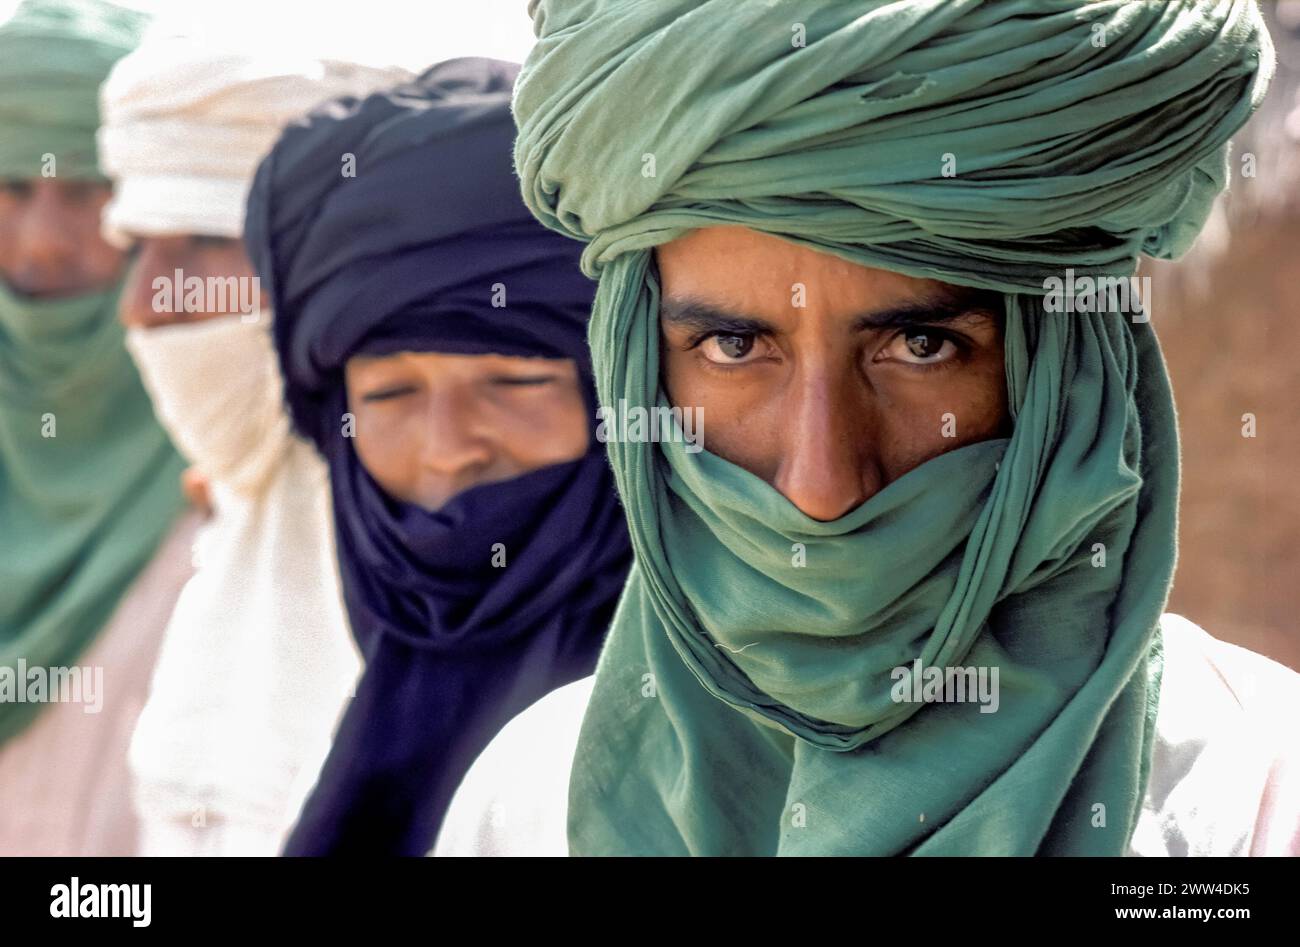 Niger, regione del sahel, ritratto di uomini Touareg da qualche parte nel sud dell'area desertica. Foto Stock